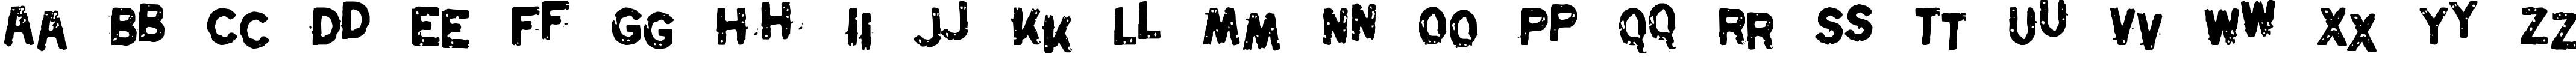 Пример написания английского алфавита шрифтом Swordfish